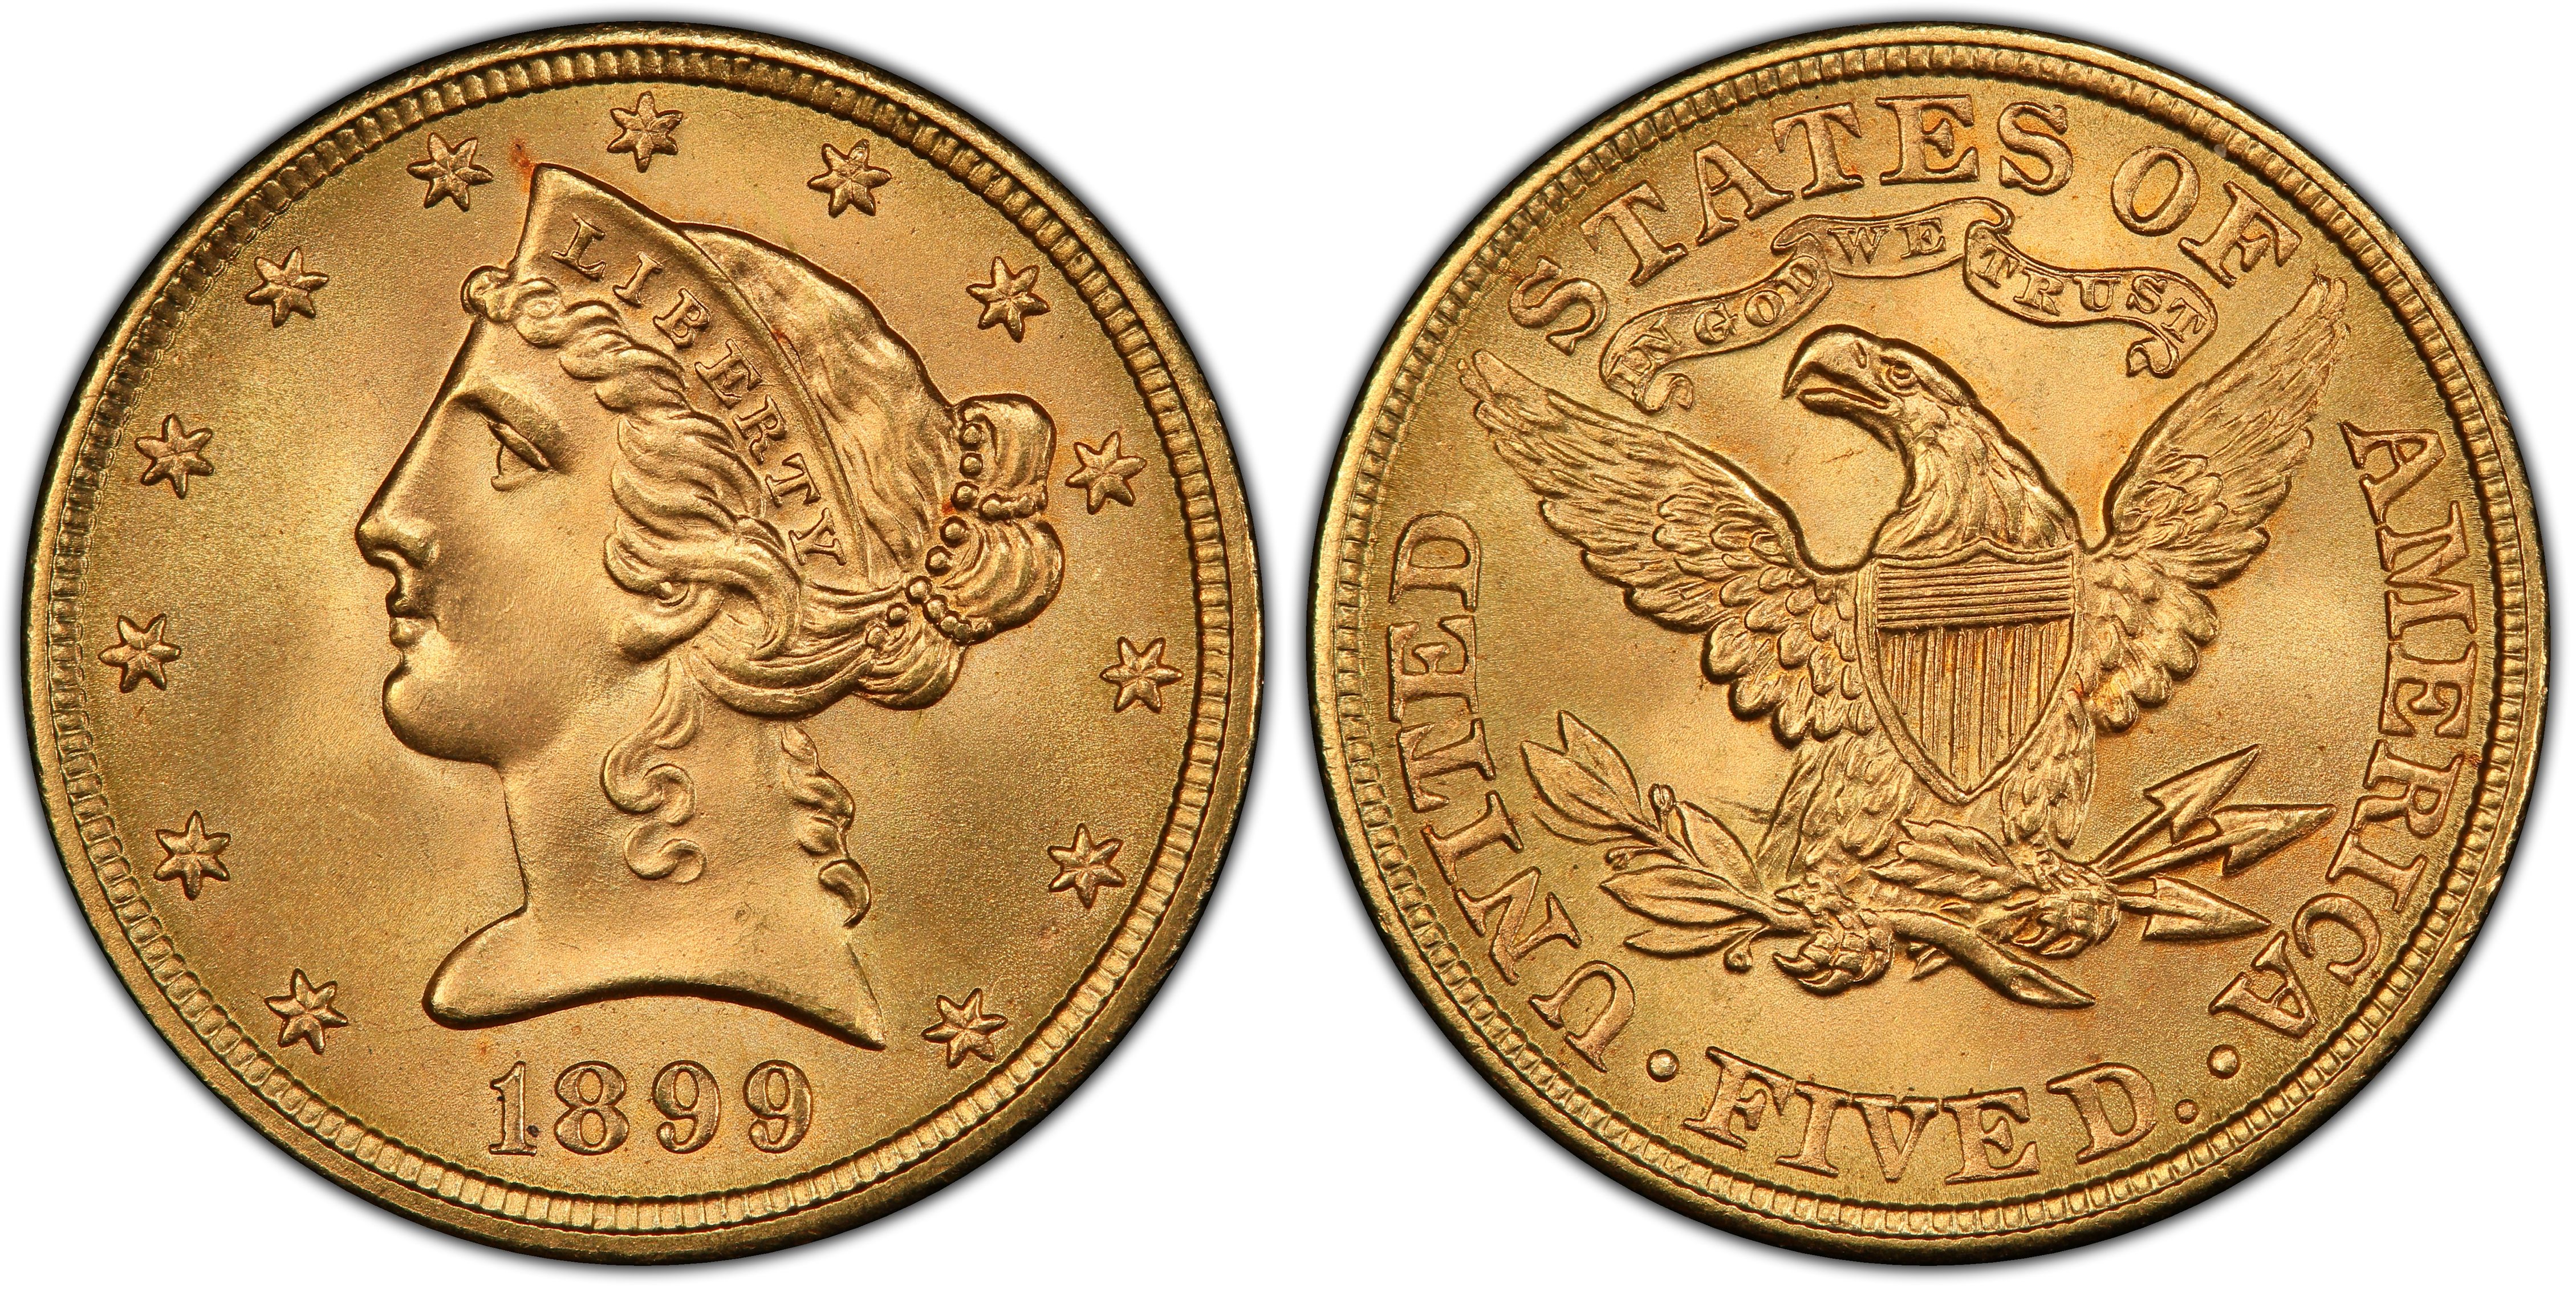 1899 $5 Gold Liberty Half Eagle NGC MS 63 - Free Shipping USA